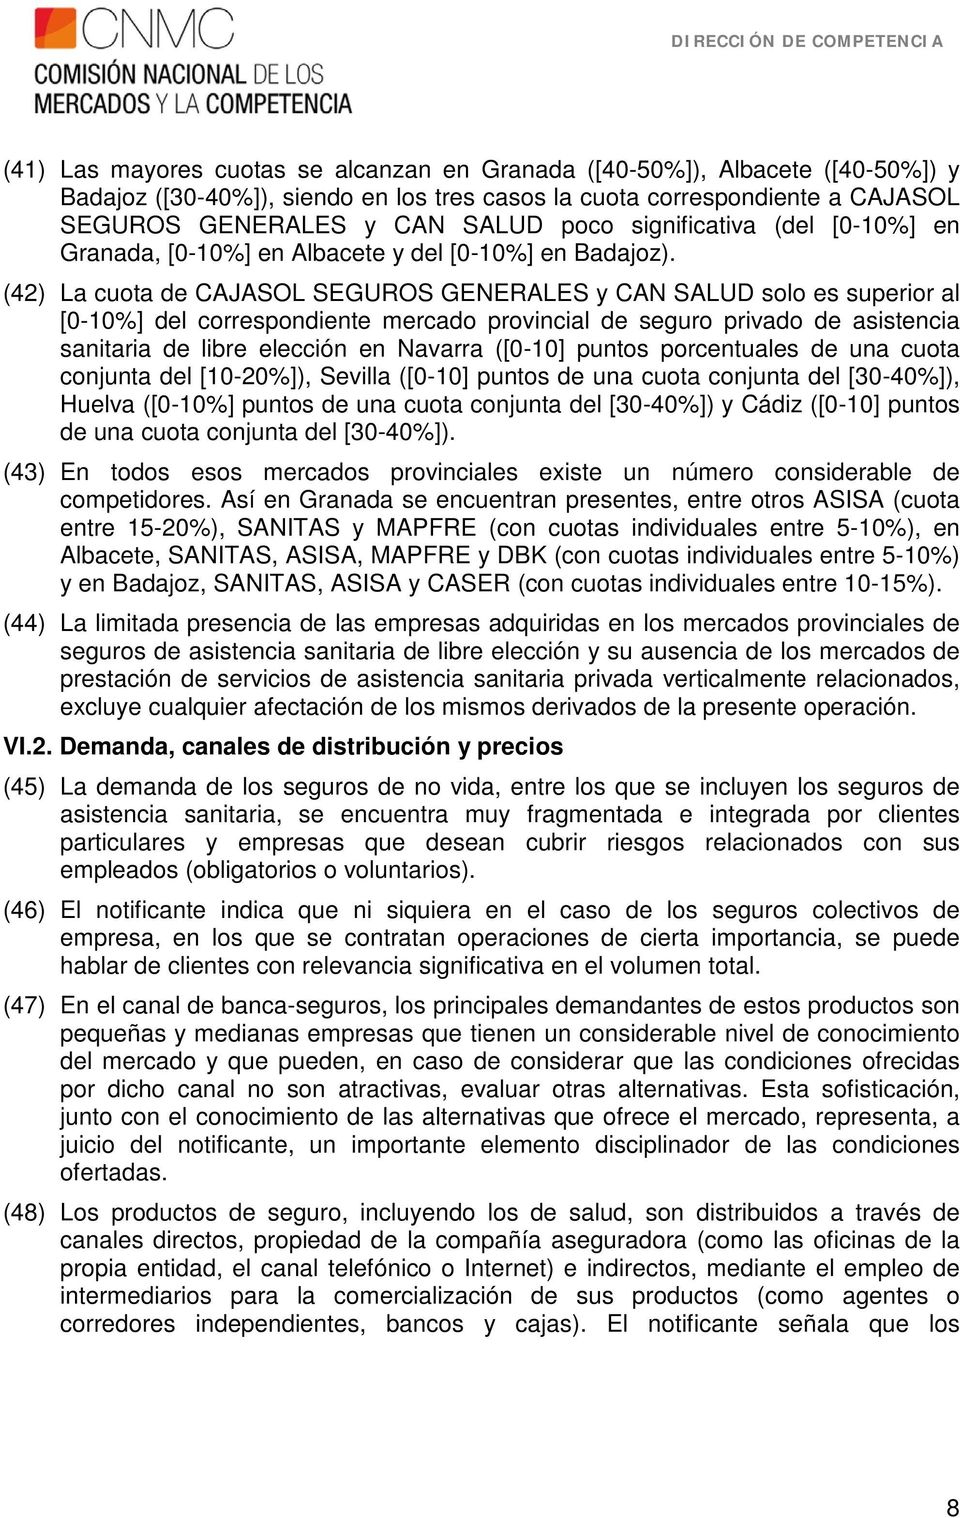 (42) La cuota de CAJASOL SEGUROS GENERALES y CAN SALUD solo es superior al [0-10%] del correspondiente mercado provincial de seguro privado de asistencia sanitaria de libre elección en Navarra